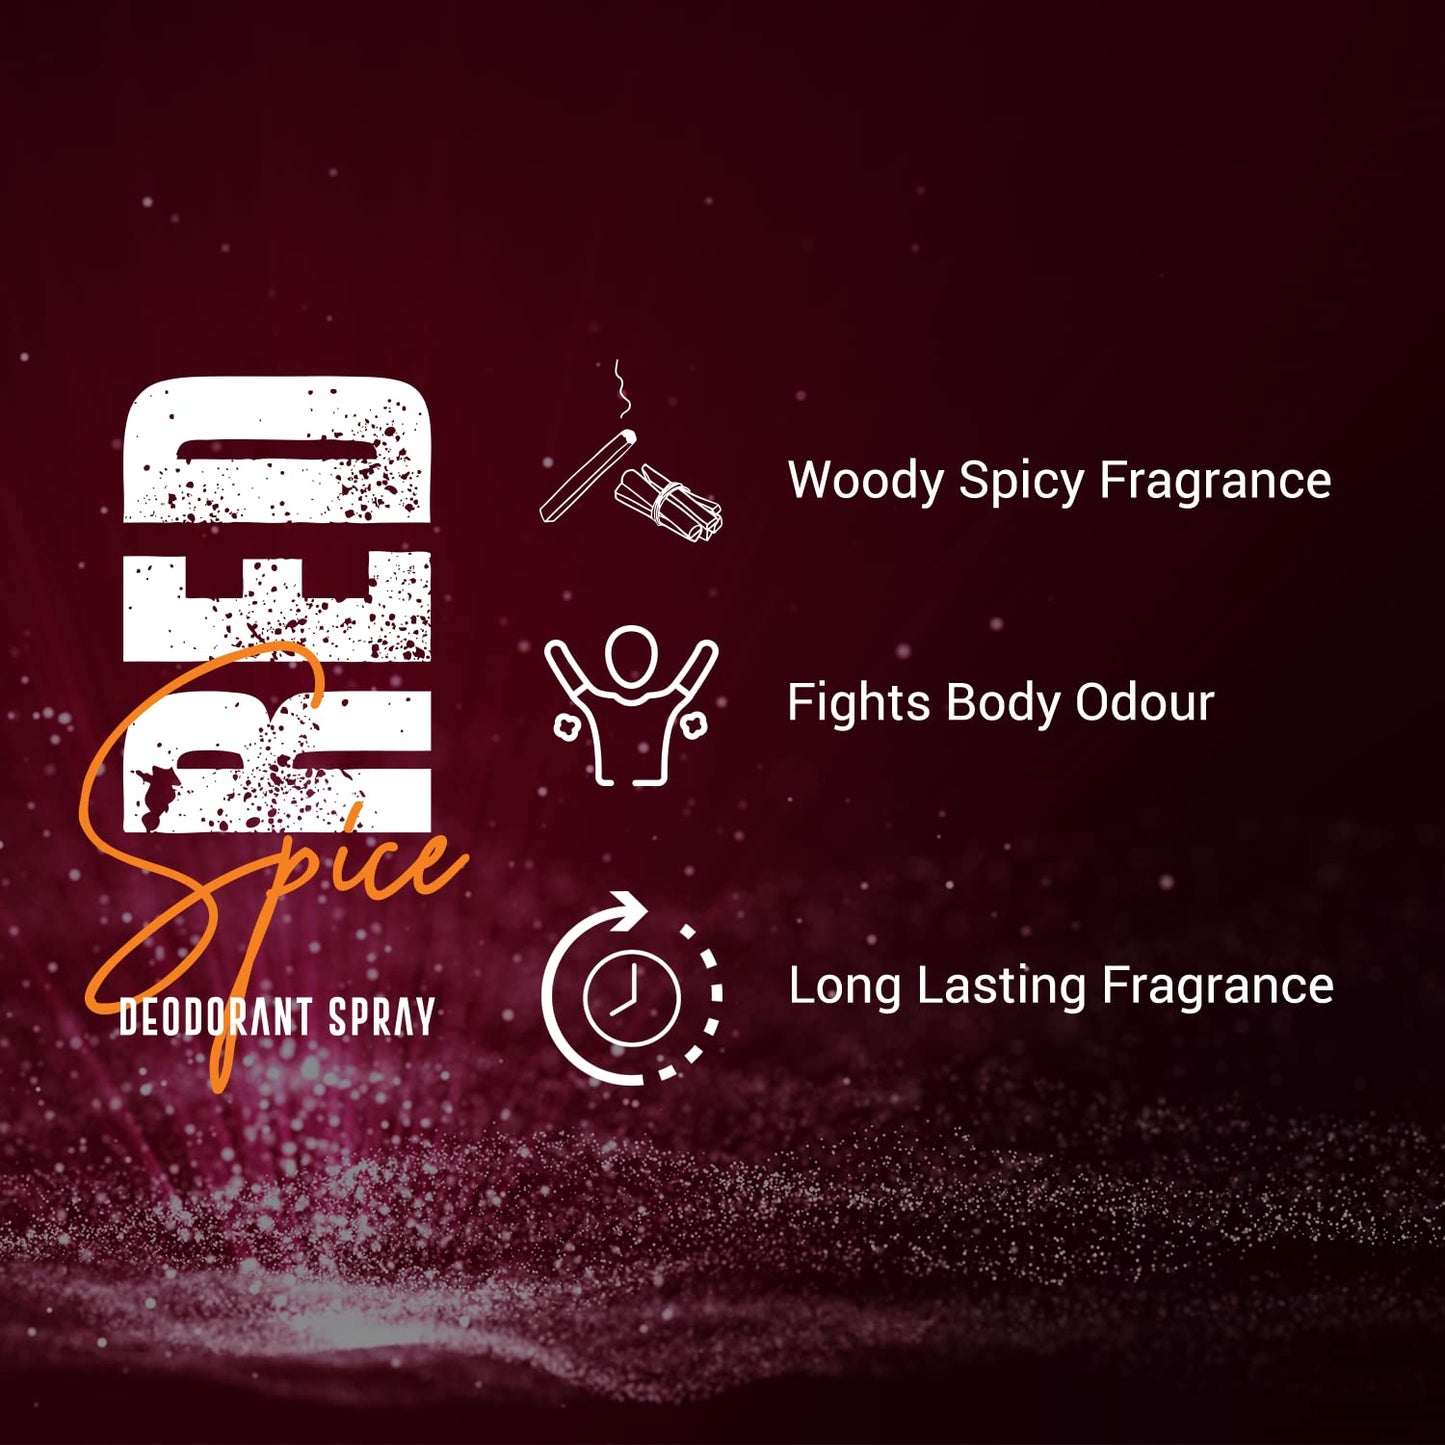 Bombay Shaving Company Red Spice Deodorant Spray - 150 ml